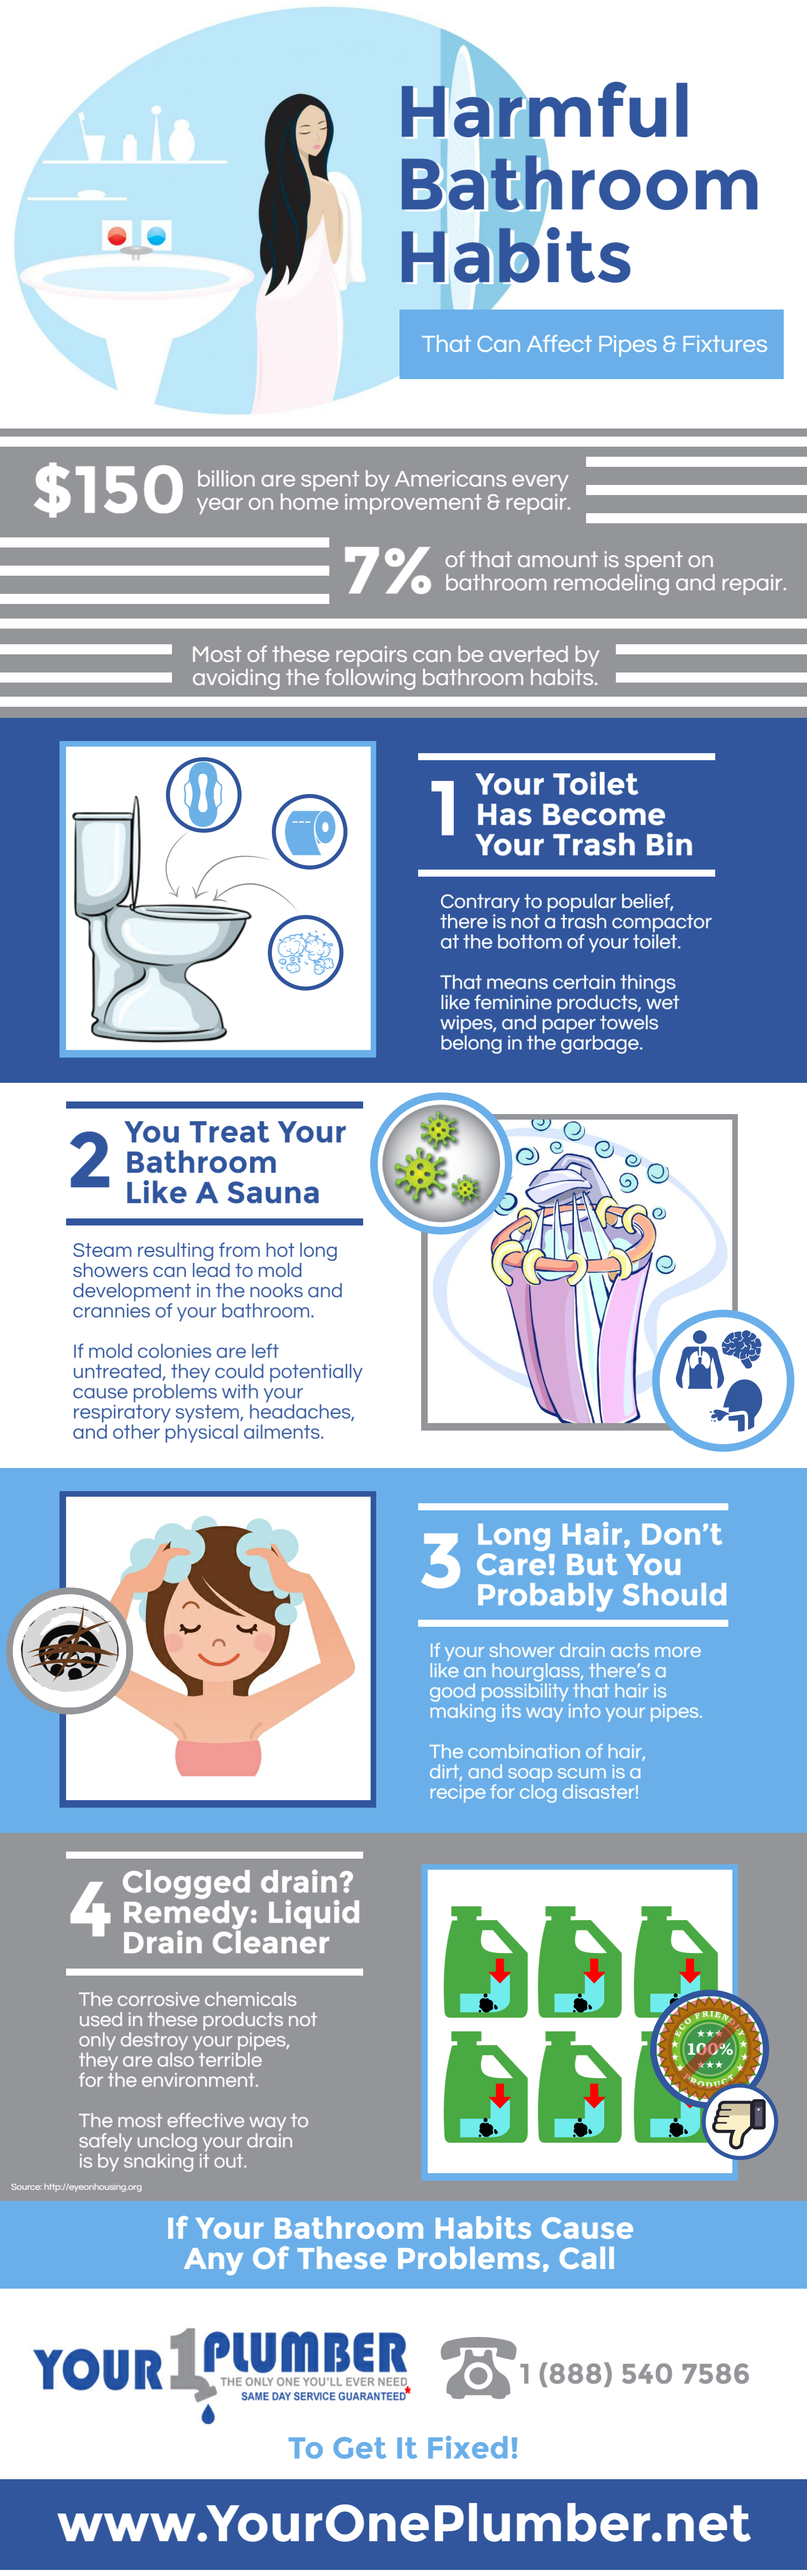 Harmful Bathroom Habits